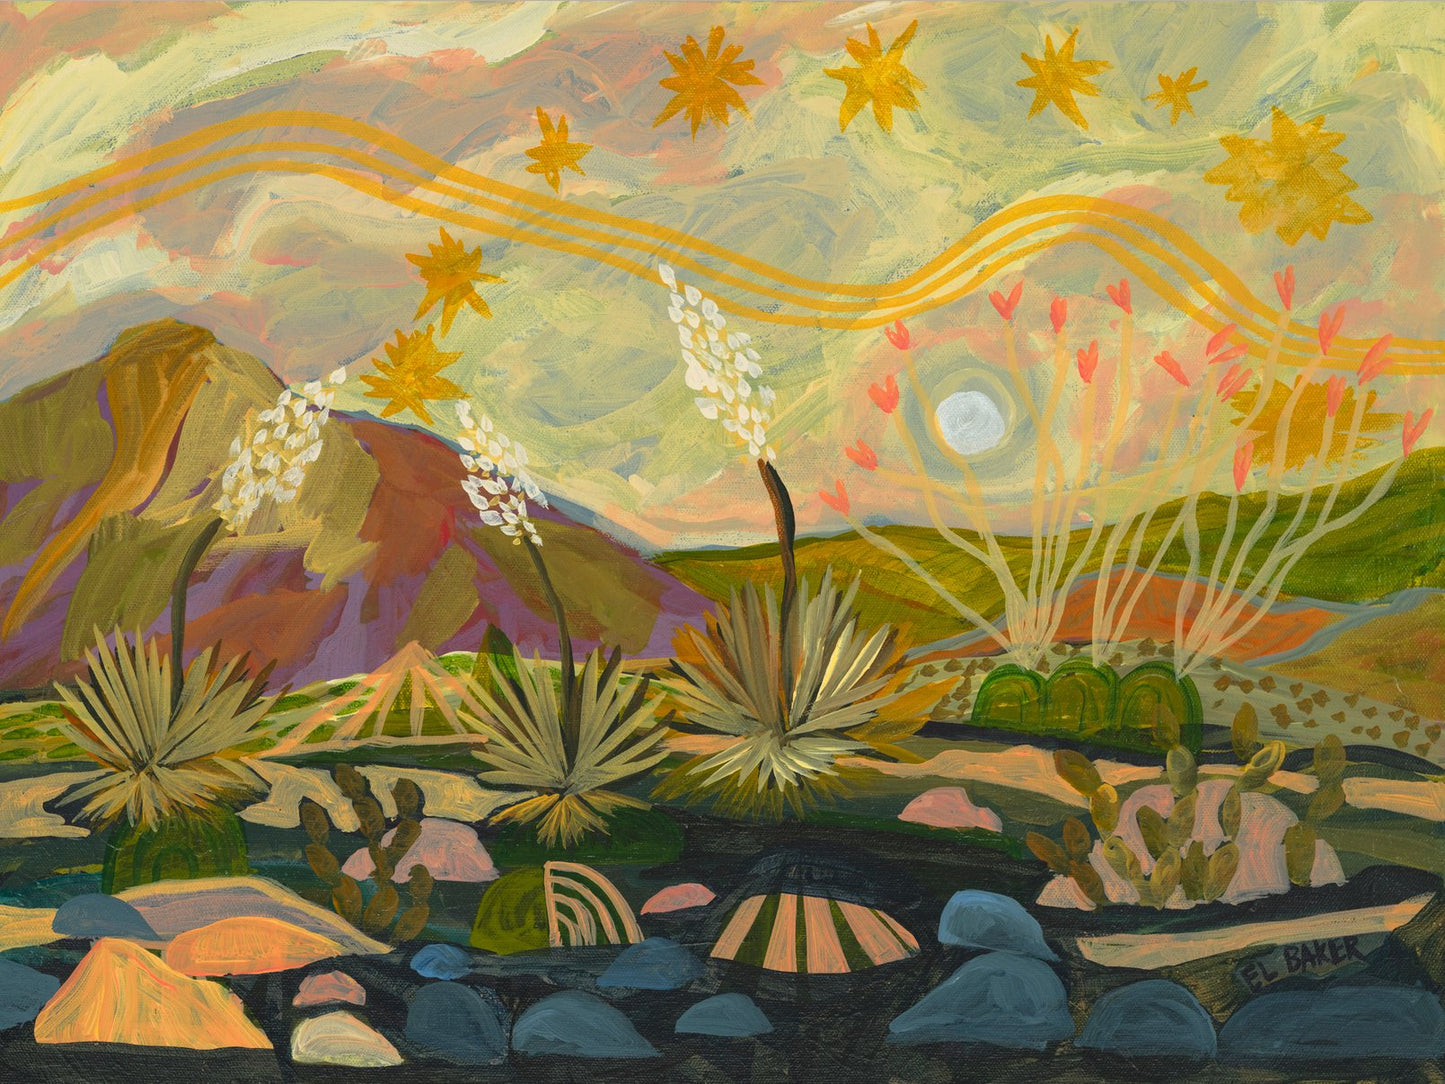 Midcentury Modern Yucca Plants Landscape Original Artwork - FRAMED, 18x24" - El Baker Art